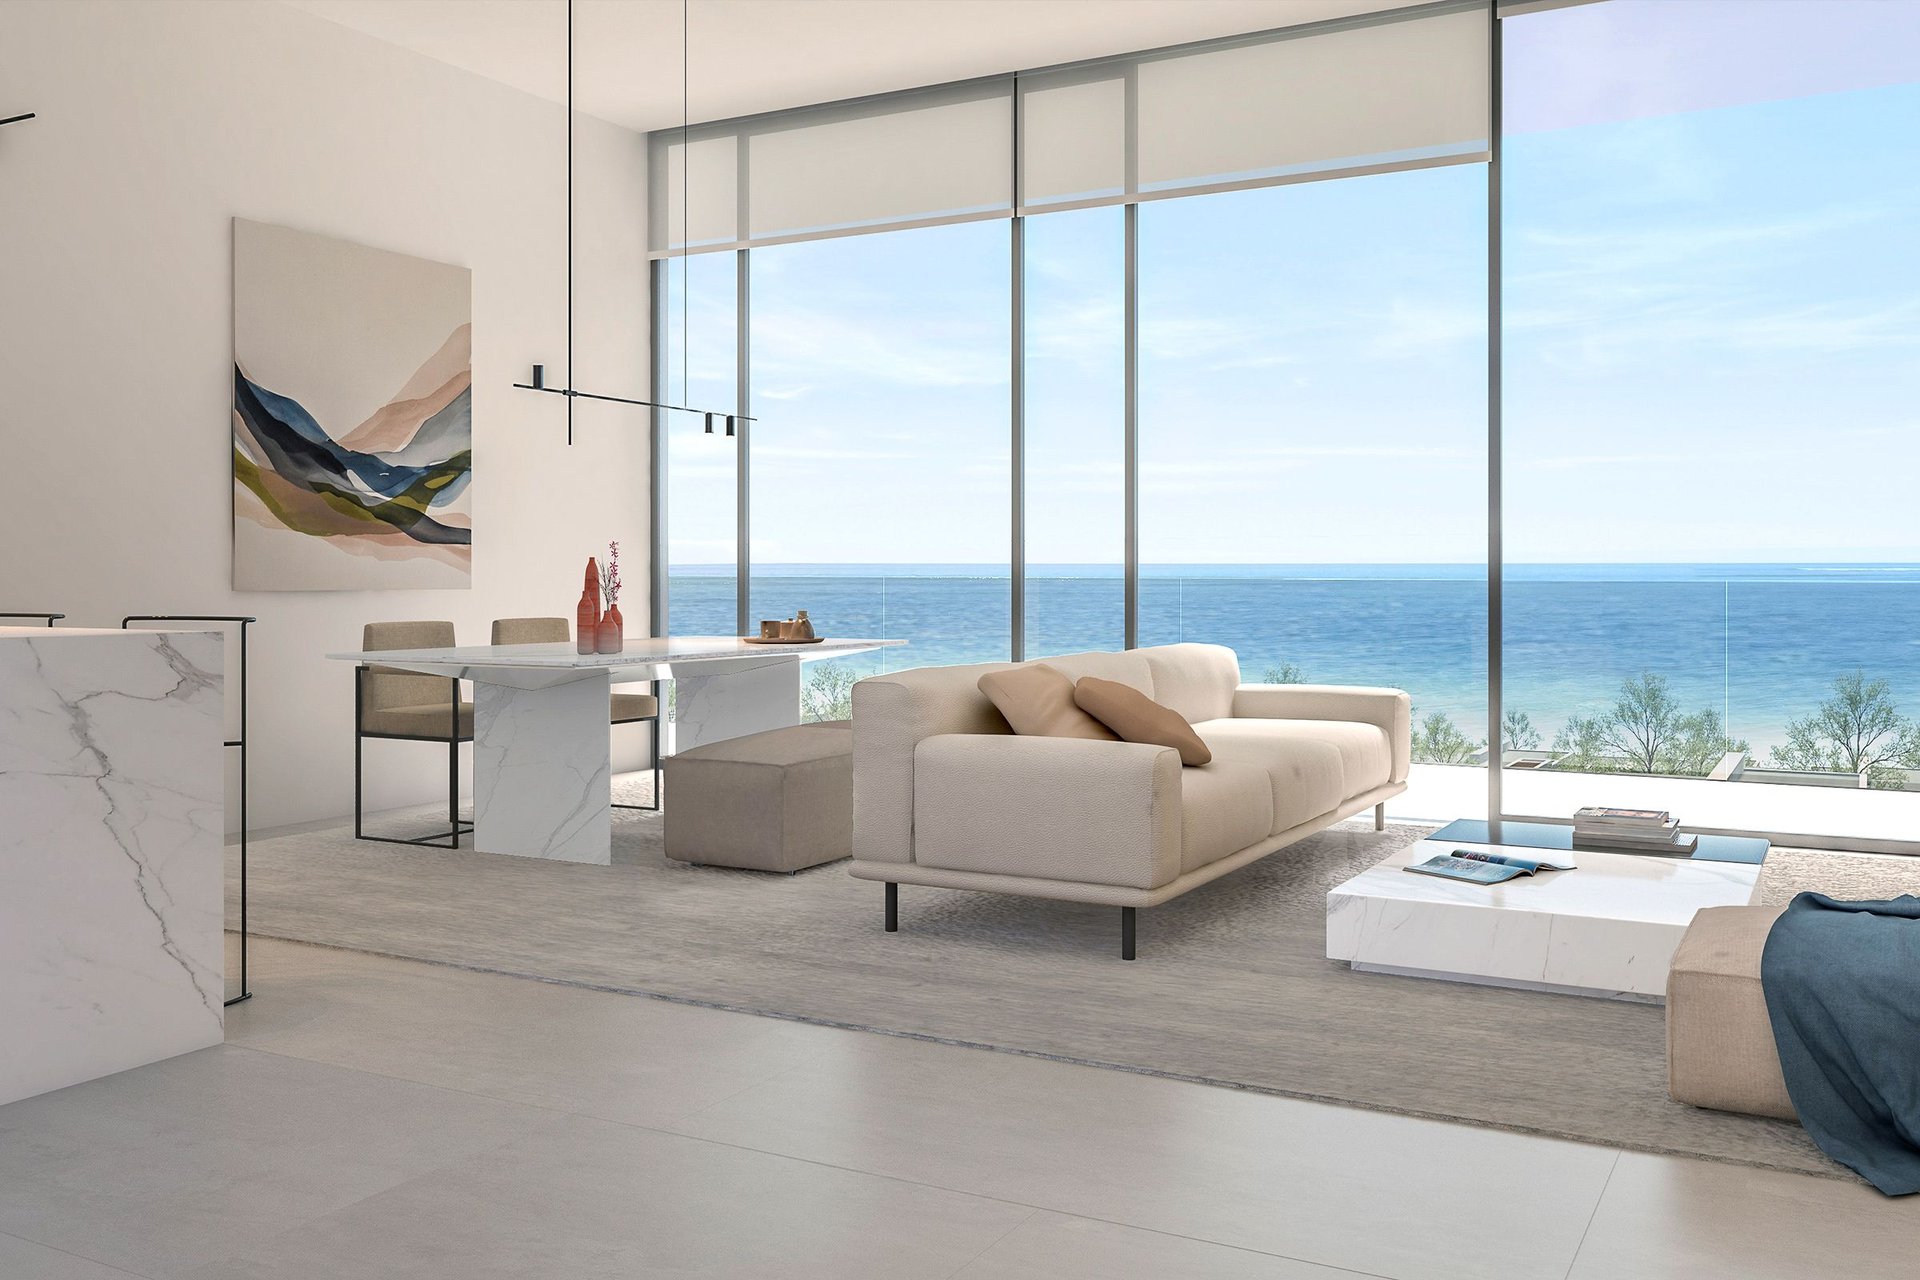 Exquisite corner apartment with beautiful sea views in Al Zorah, picture 1